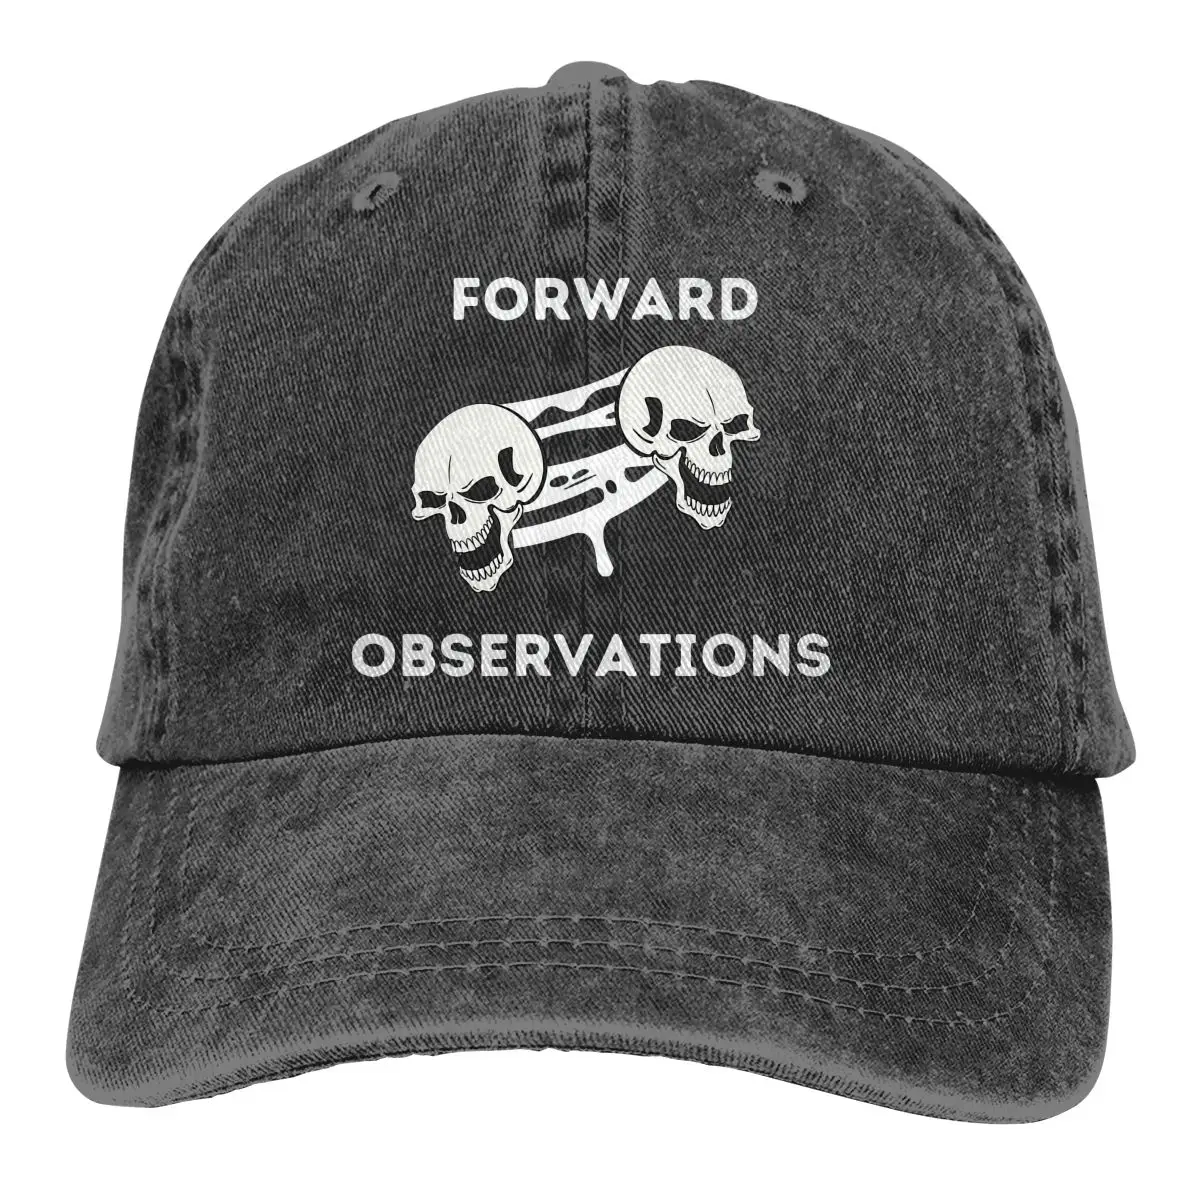 

Forward Observations Death Baseball Cap Men Forward Observations Group Caps colors Women Summer Snapback Caps